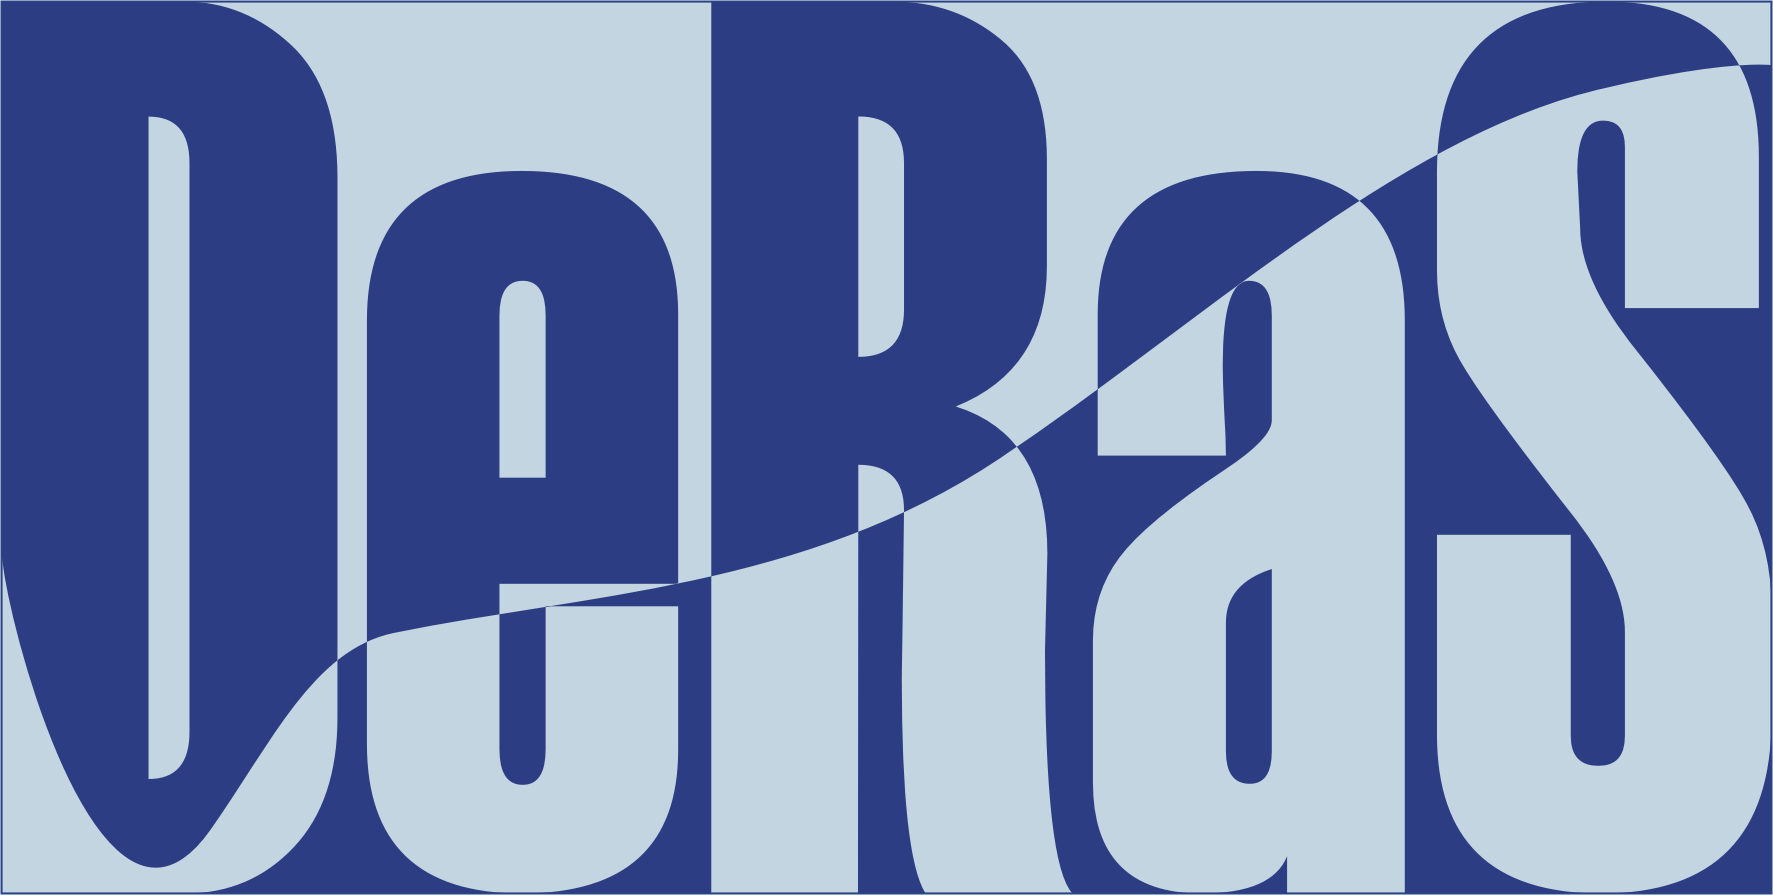 DeRaS_logo